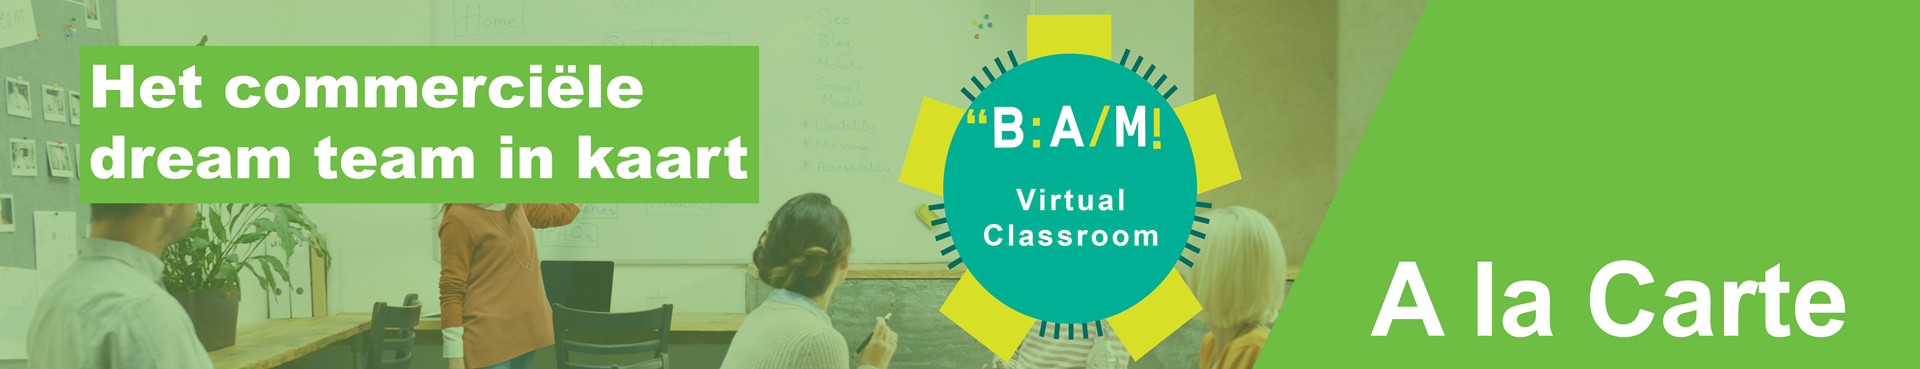 commerciële dreamteam_virtual classroom